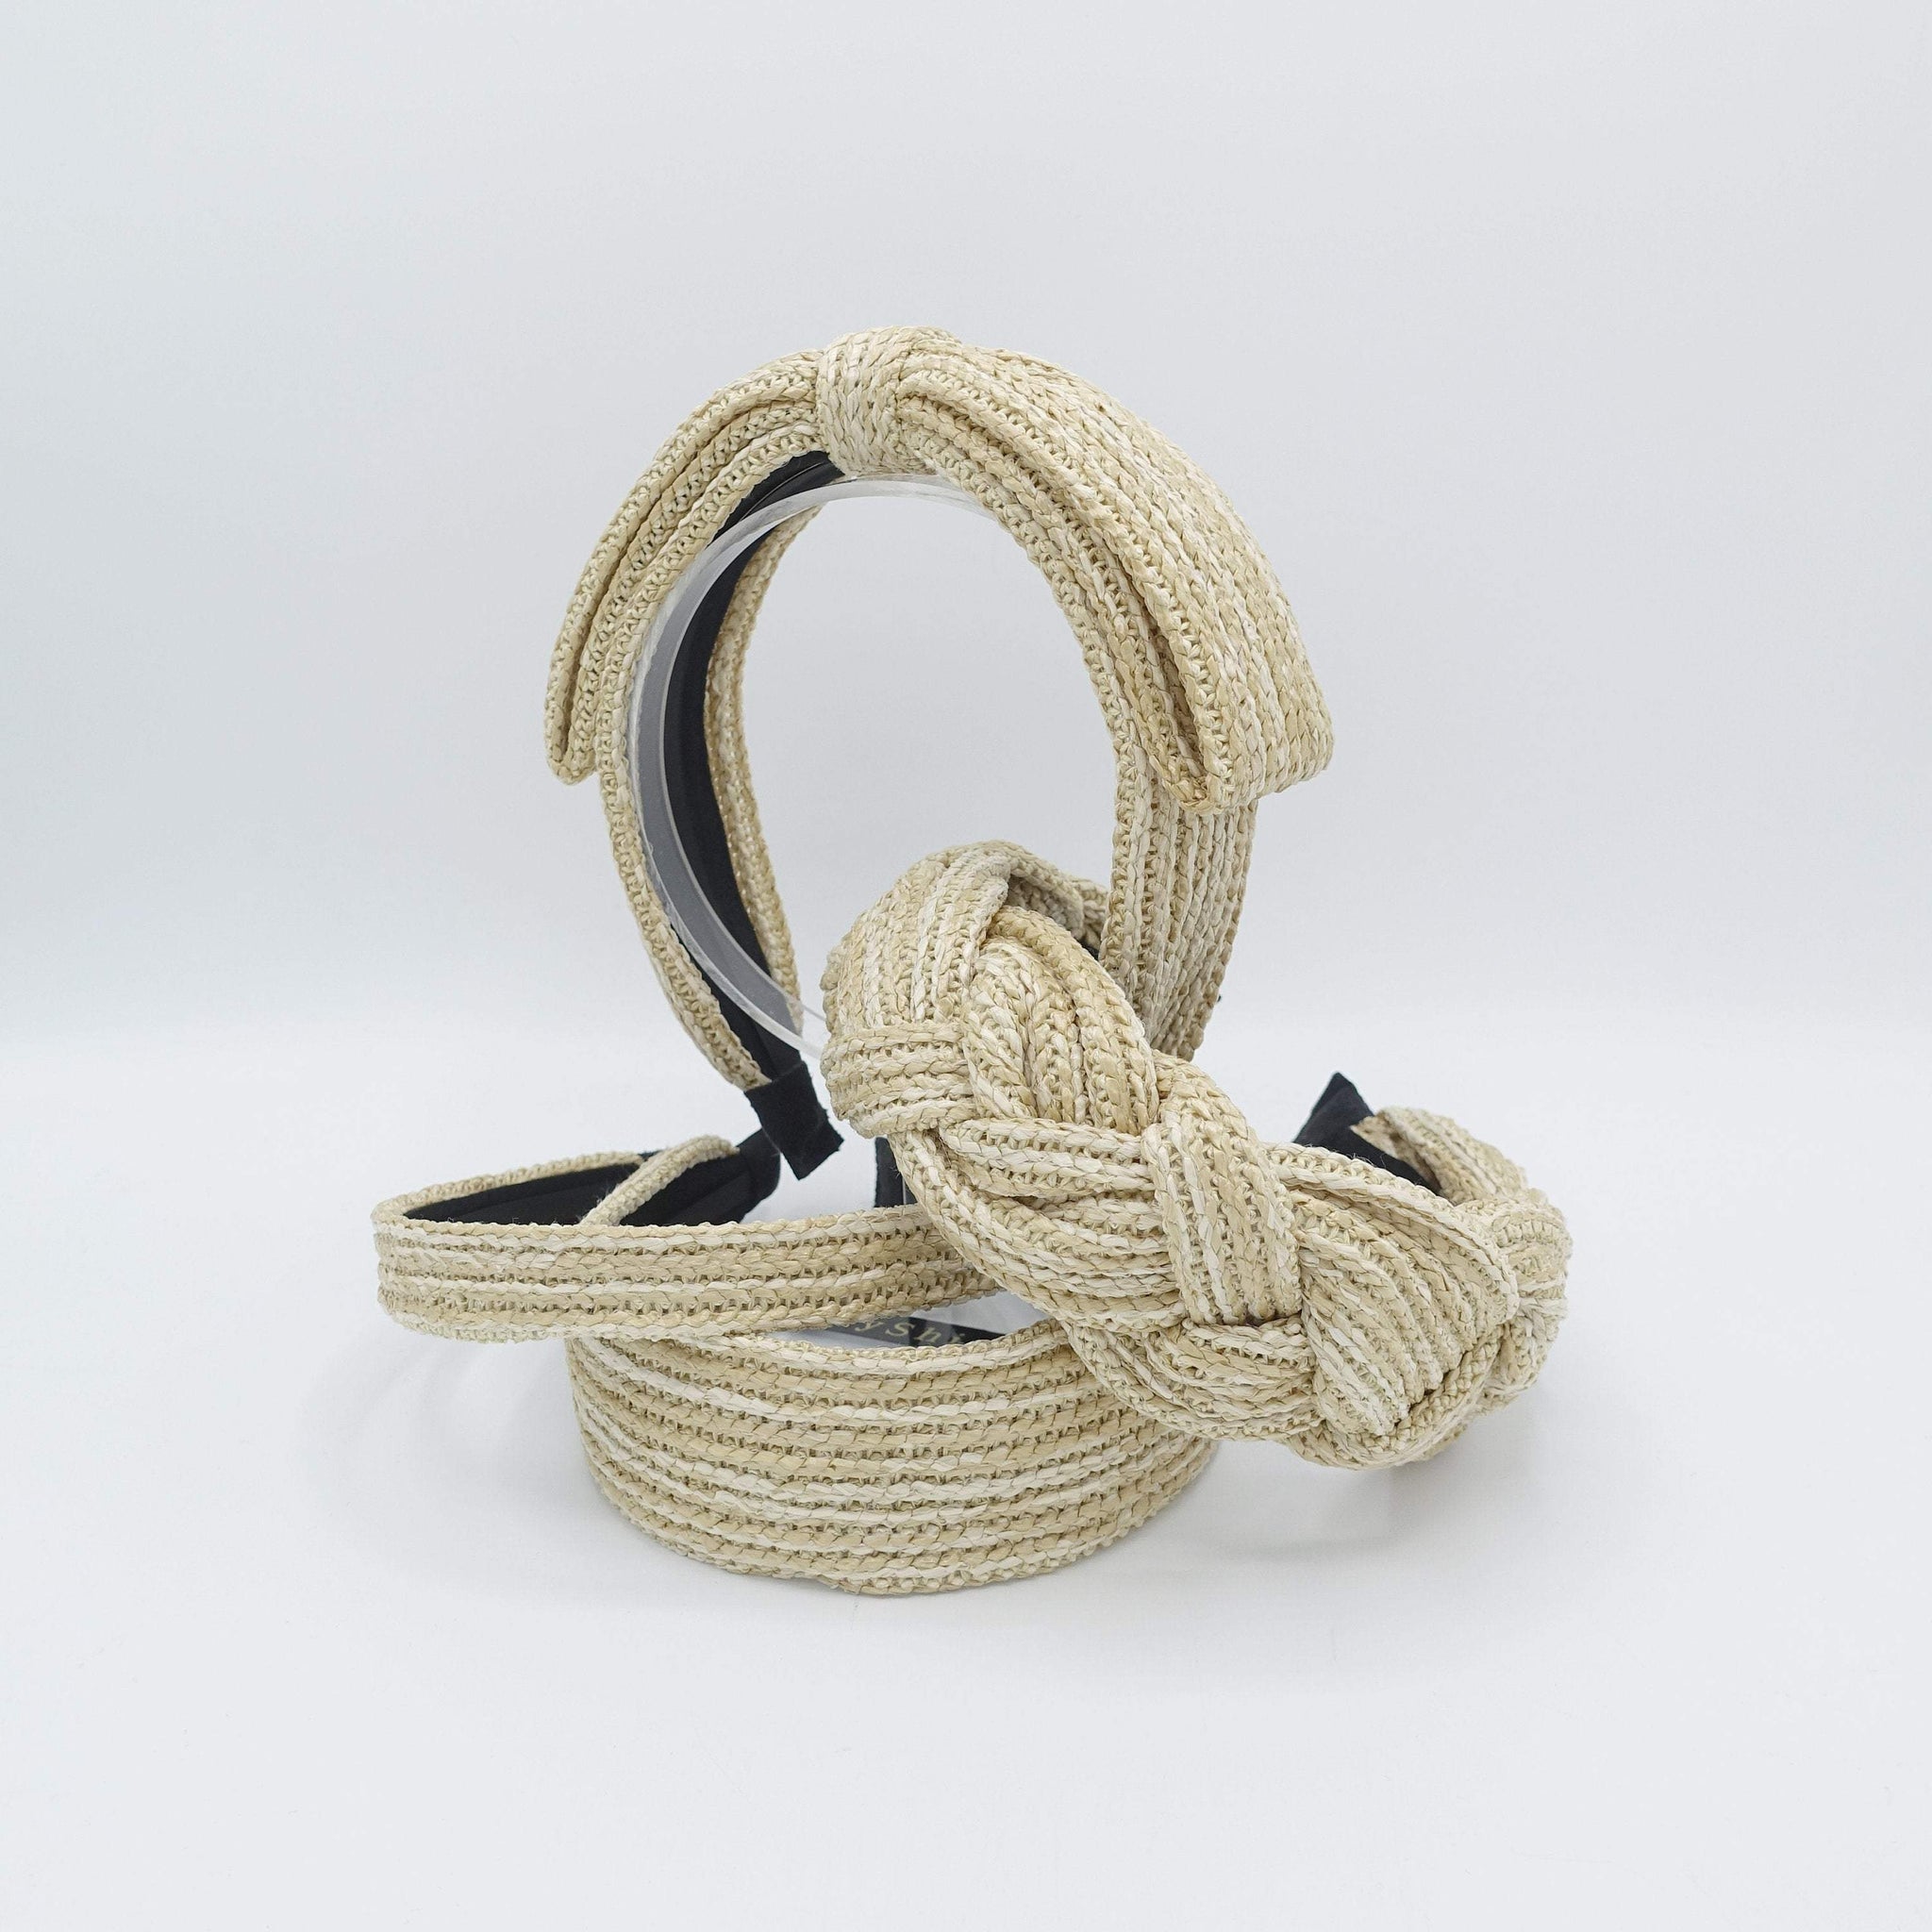 VeryShine Headband straw headband vacation hairband braided  bow tiem hair accessory for women